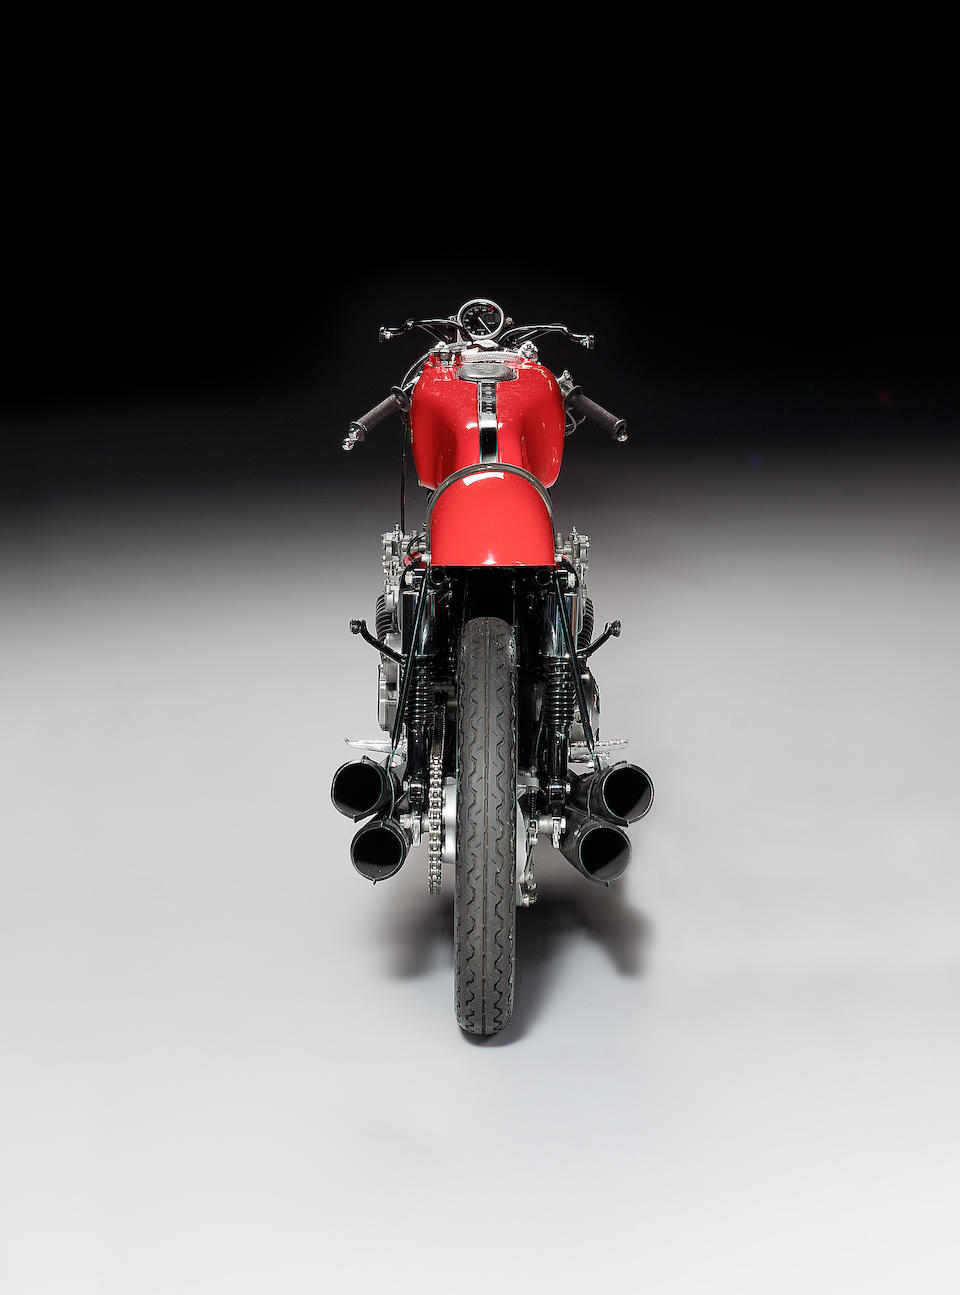 موتورسیکلت 6 سیلندر هوندا برای مسابقات جایزه بزرگ سال 1964 طراحی شد